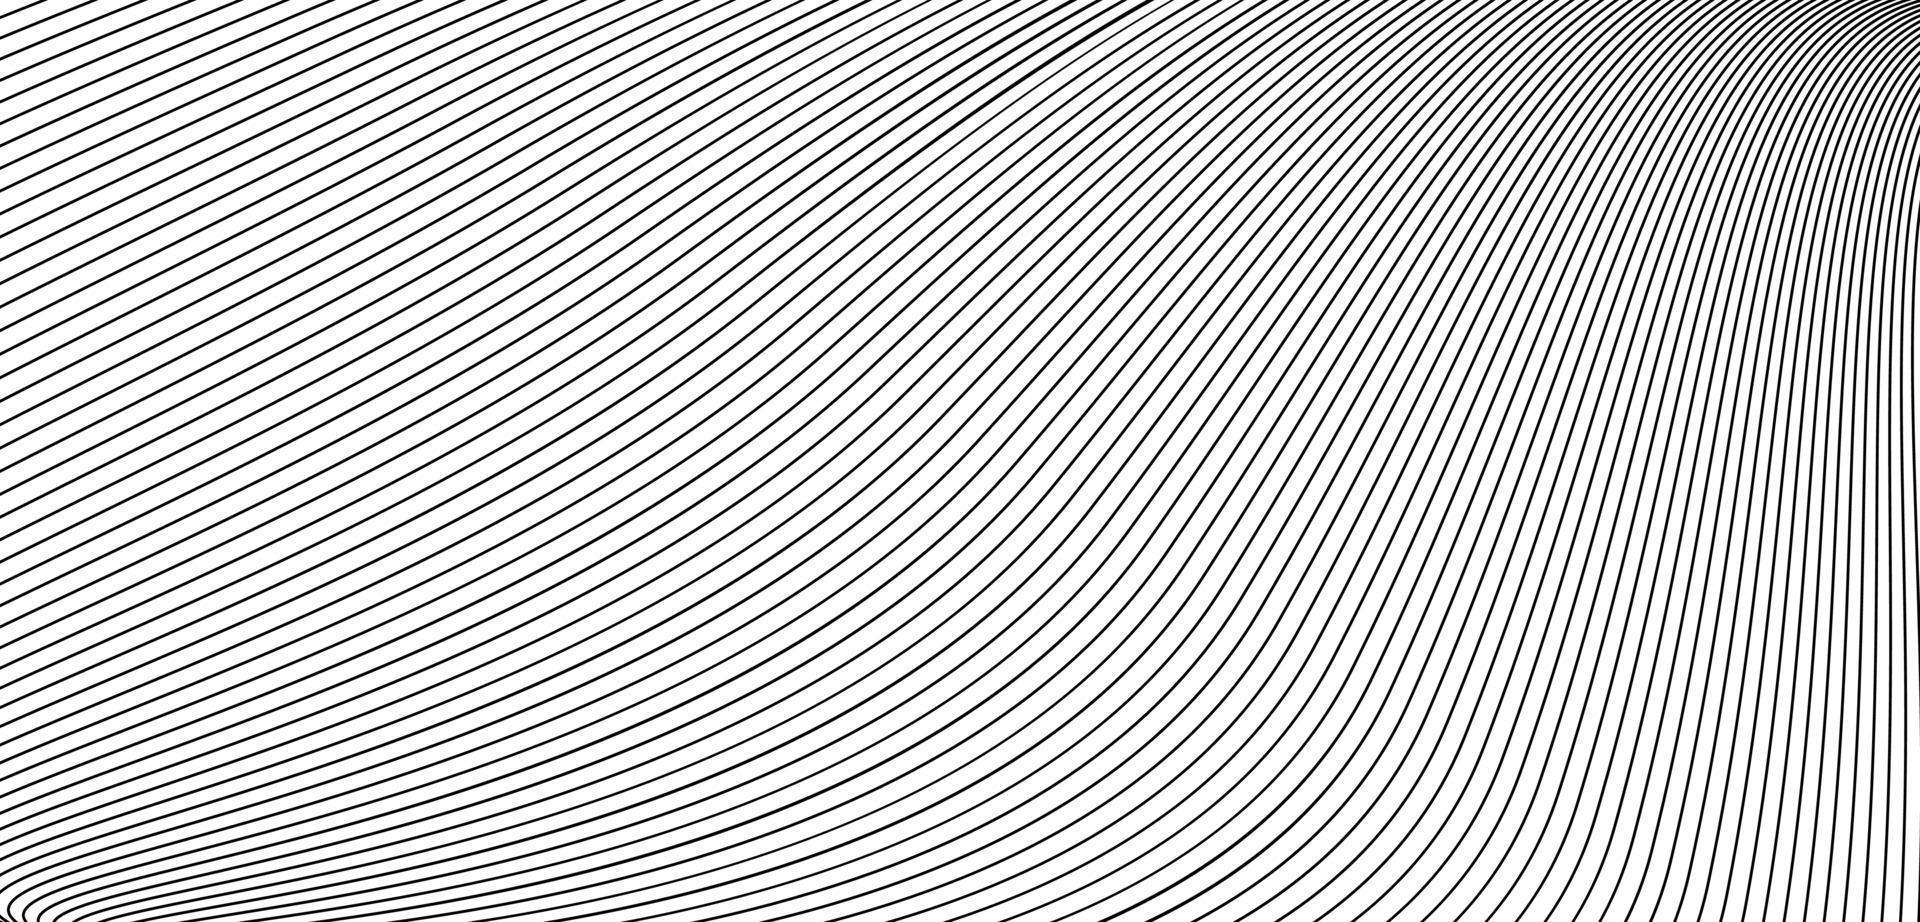 textura listrada. projeto de linha. design de fundo abstrato em espiral vetor